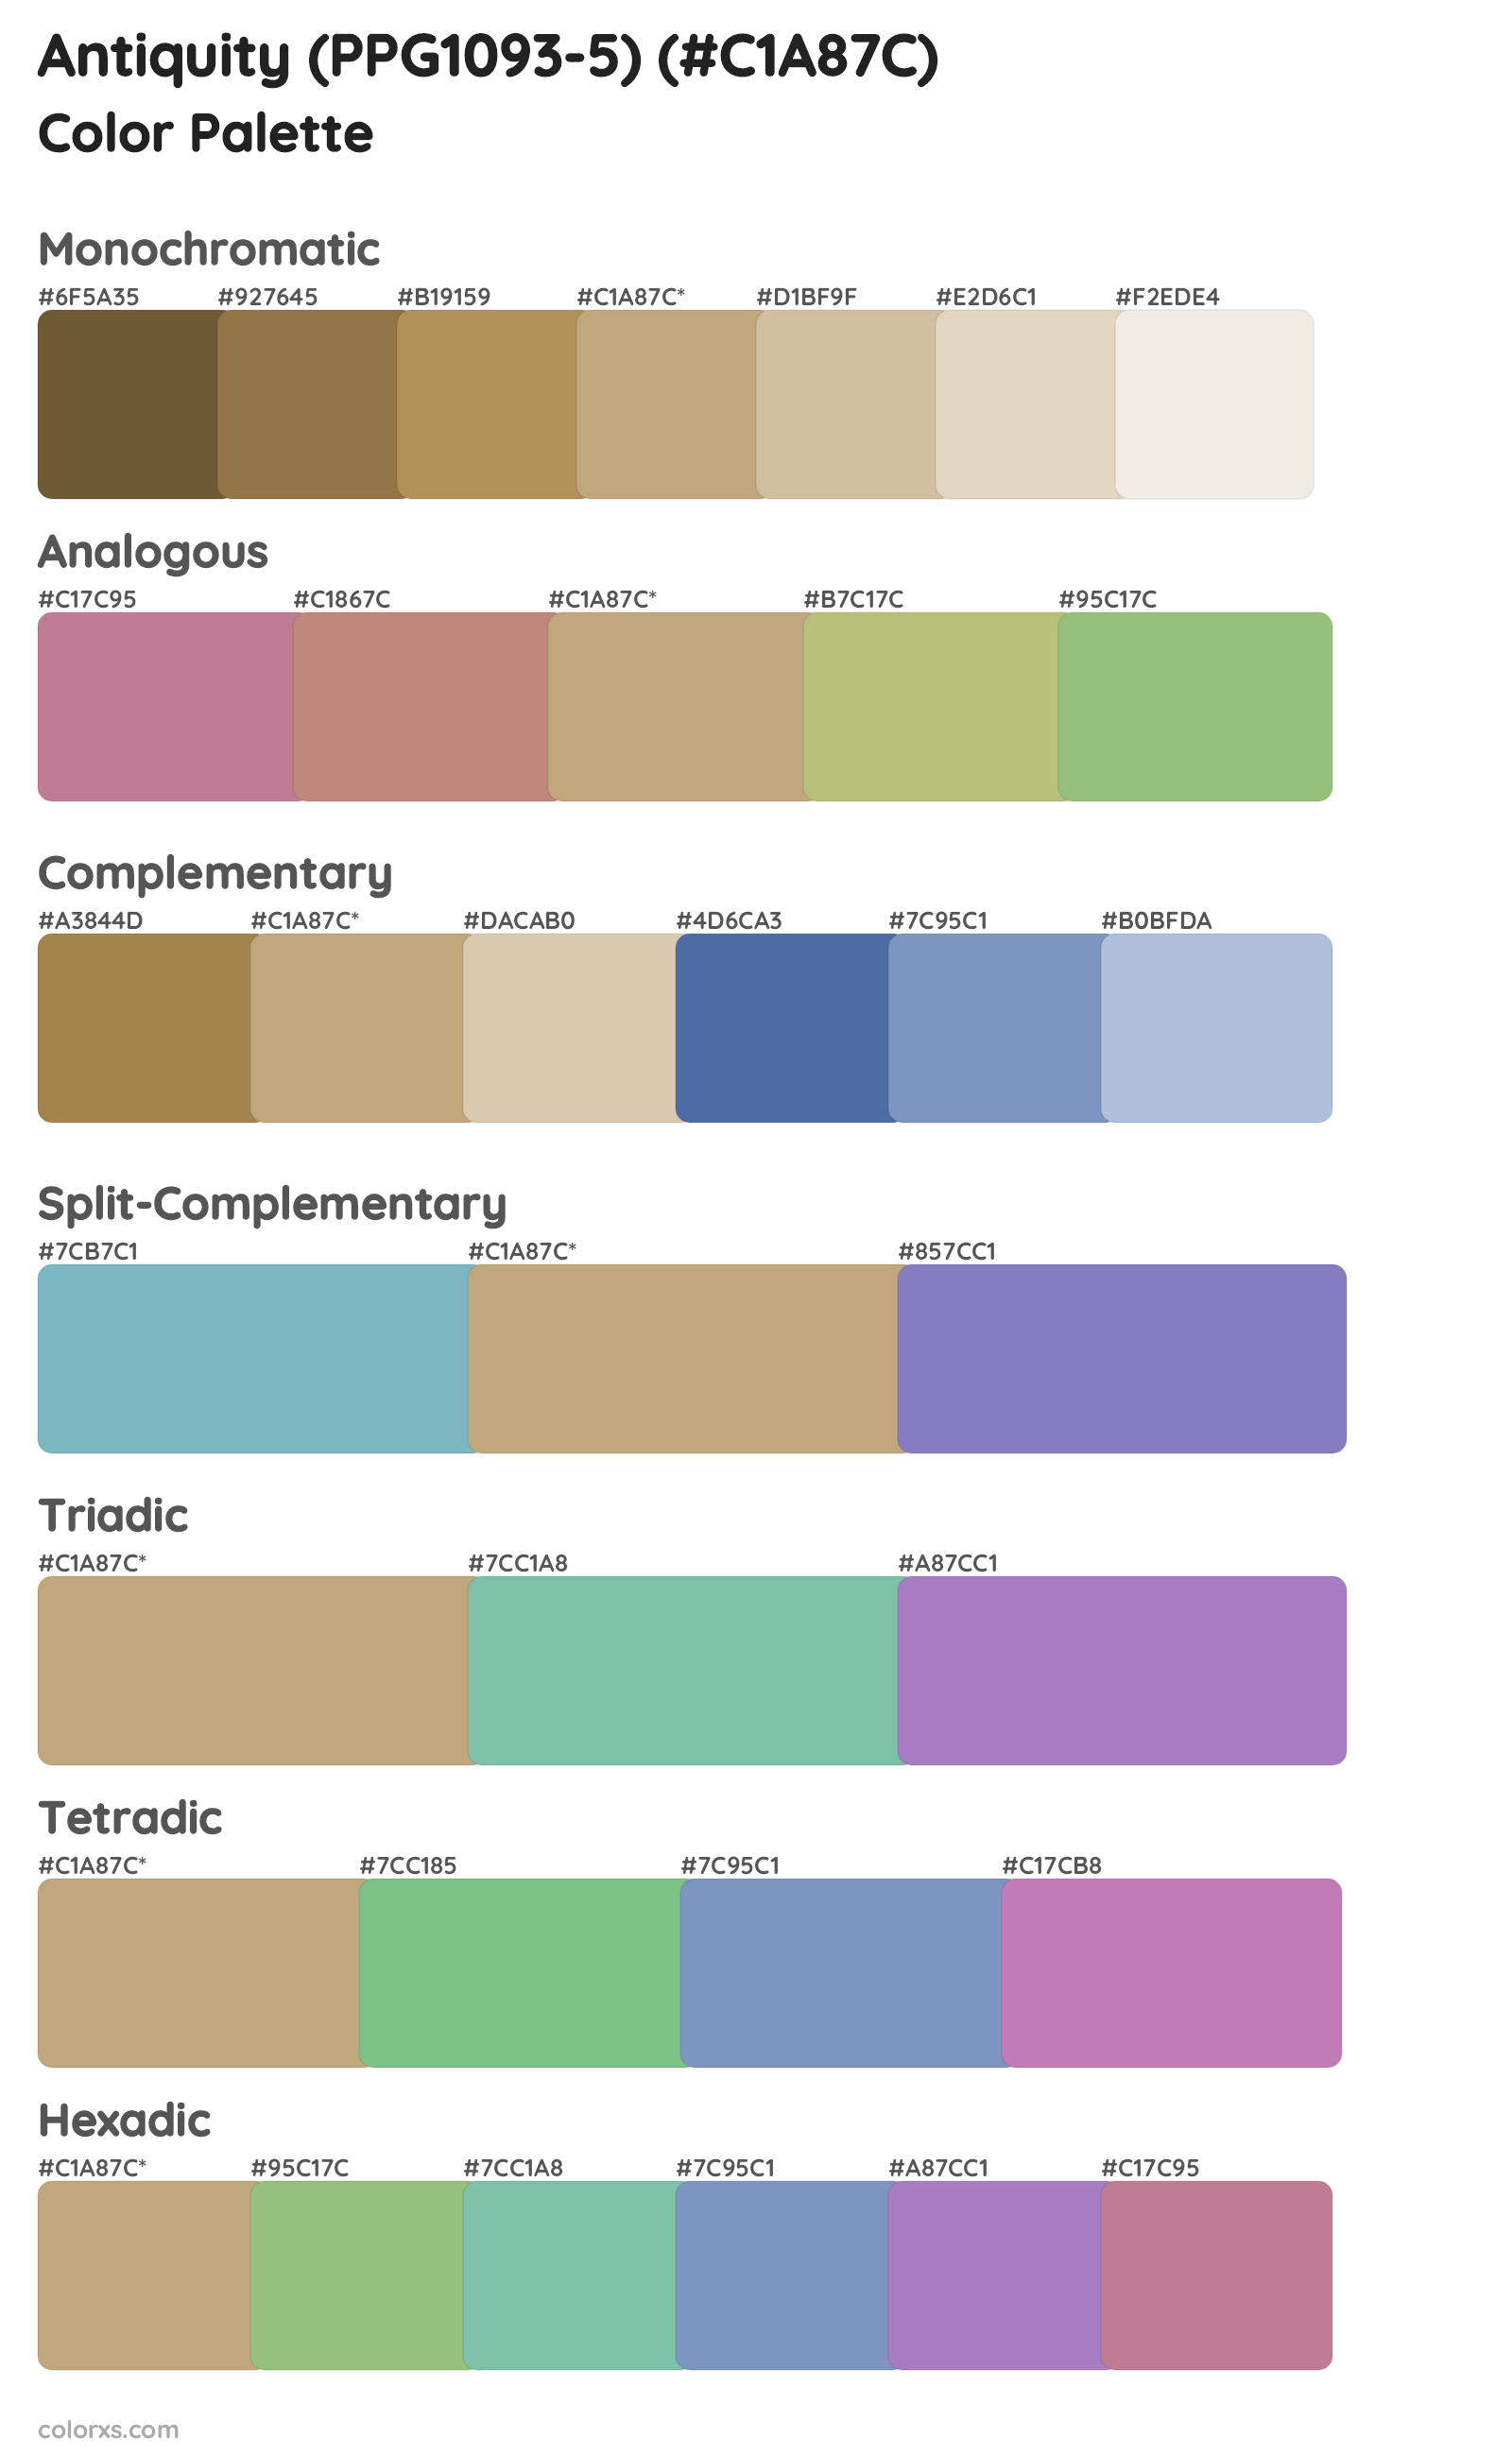 Antiquity (PPG1093-5) Color Scheme Palettes